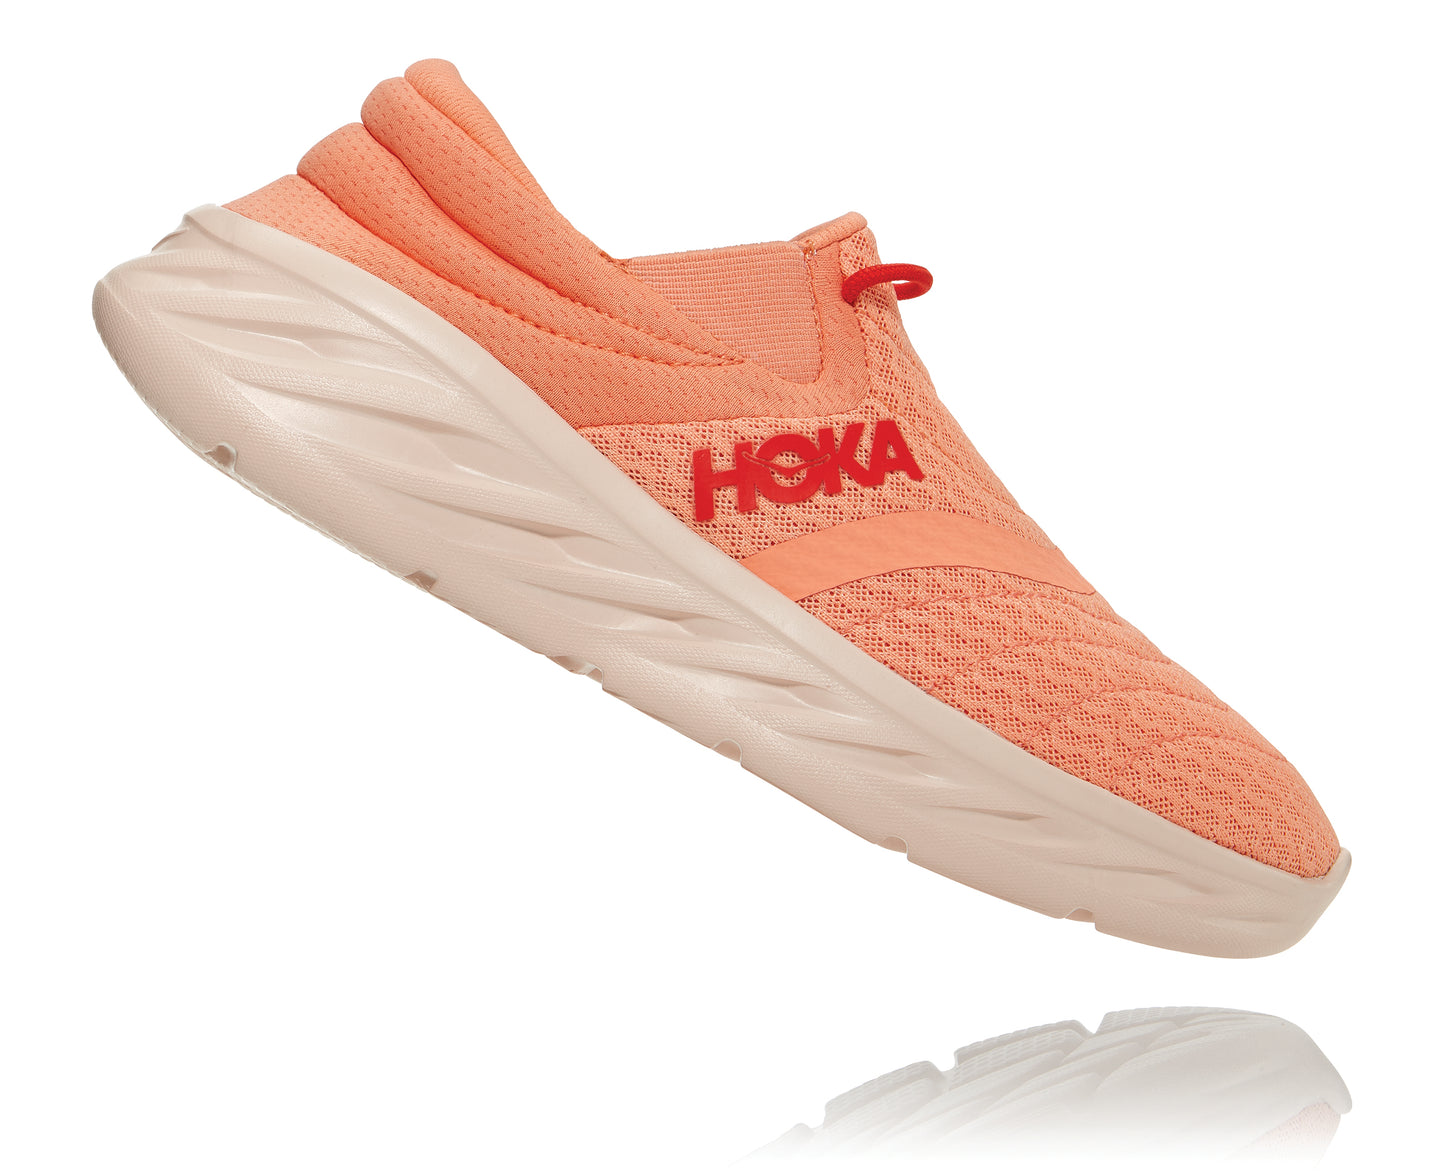 2– Hoka Ora Recovery Shoes 2 נעלי גרב הוקה אורה